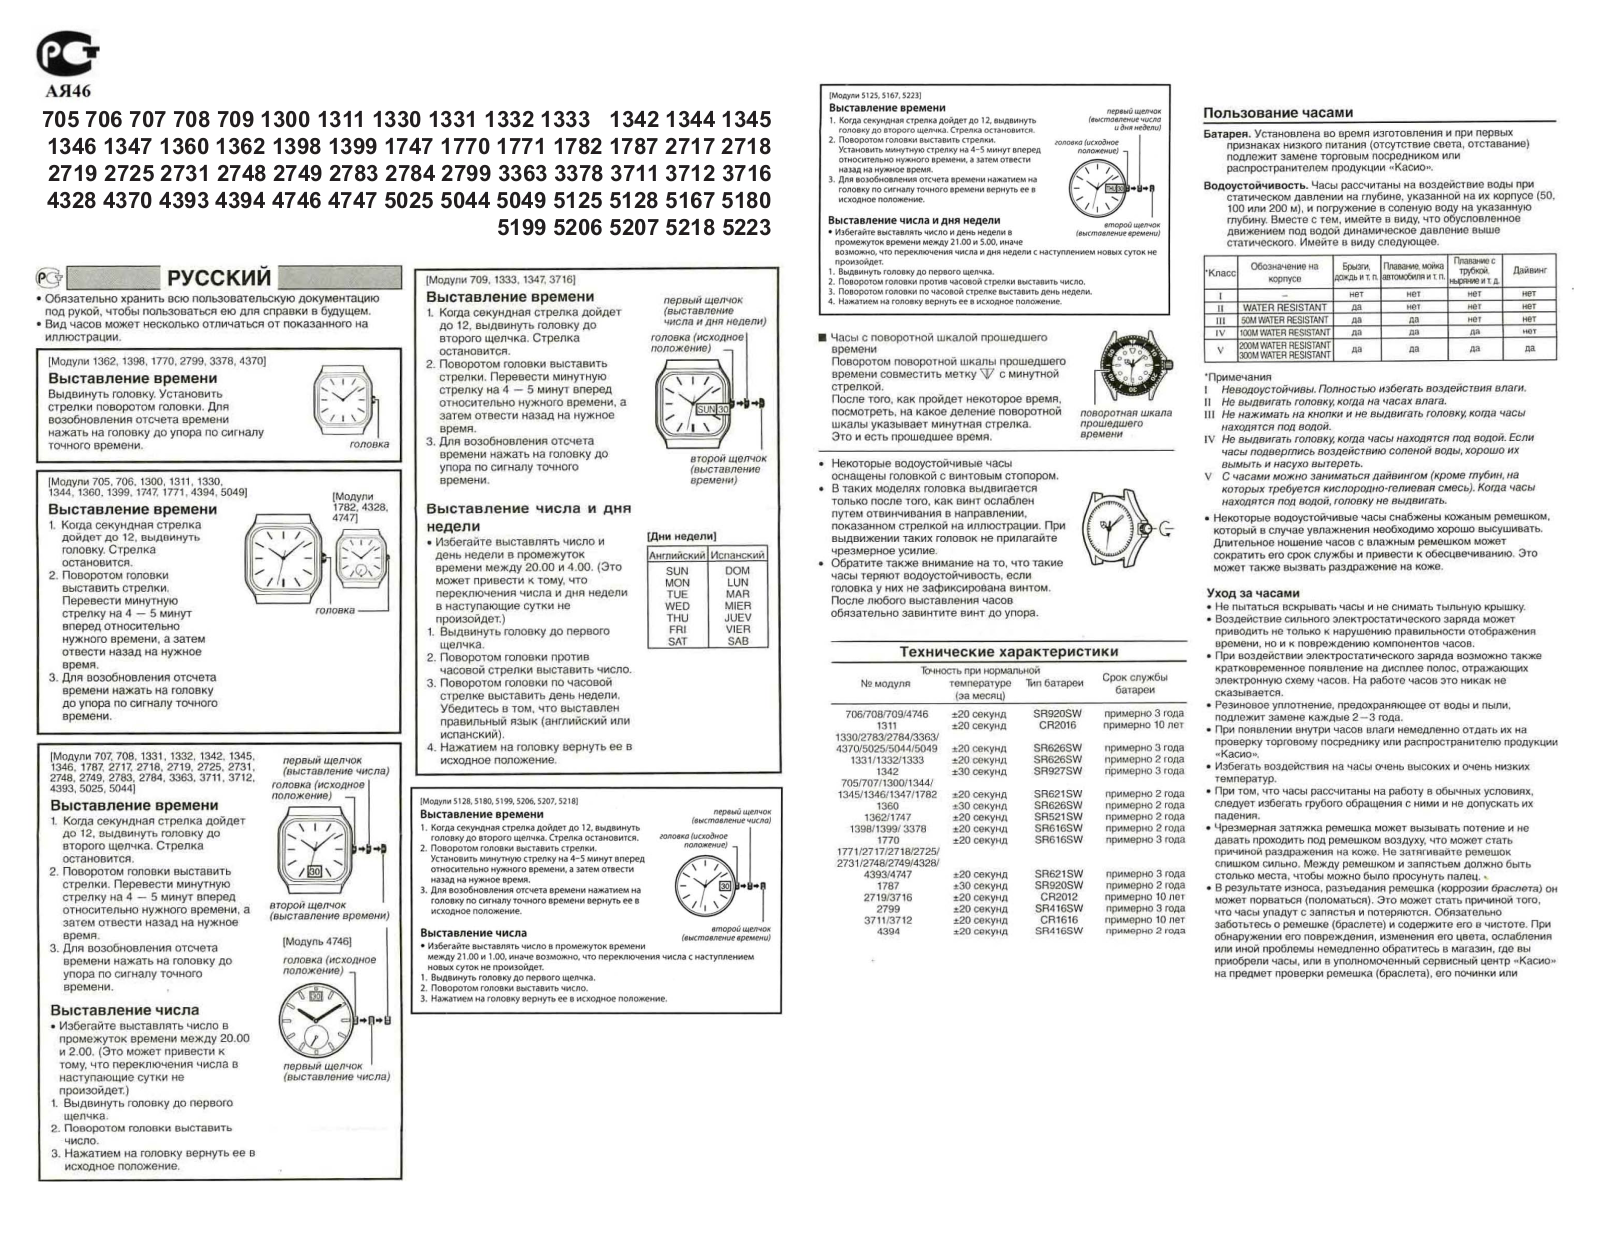 Casio 2717 User Manual